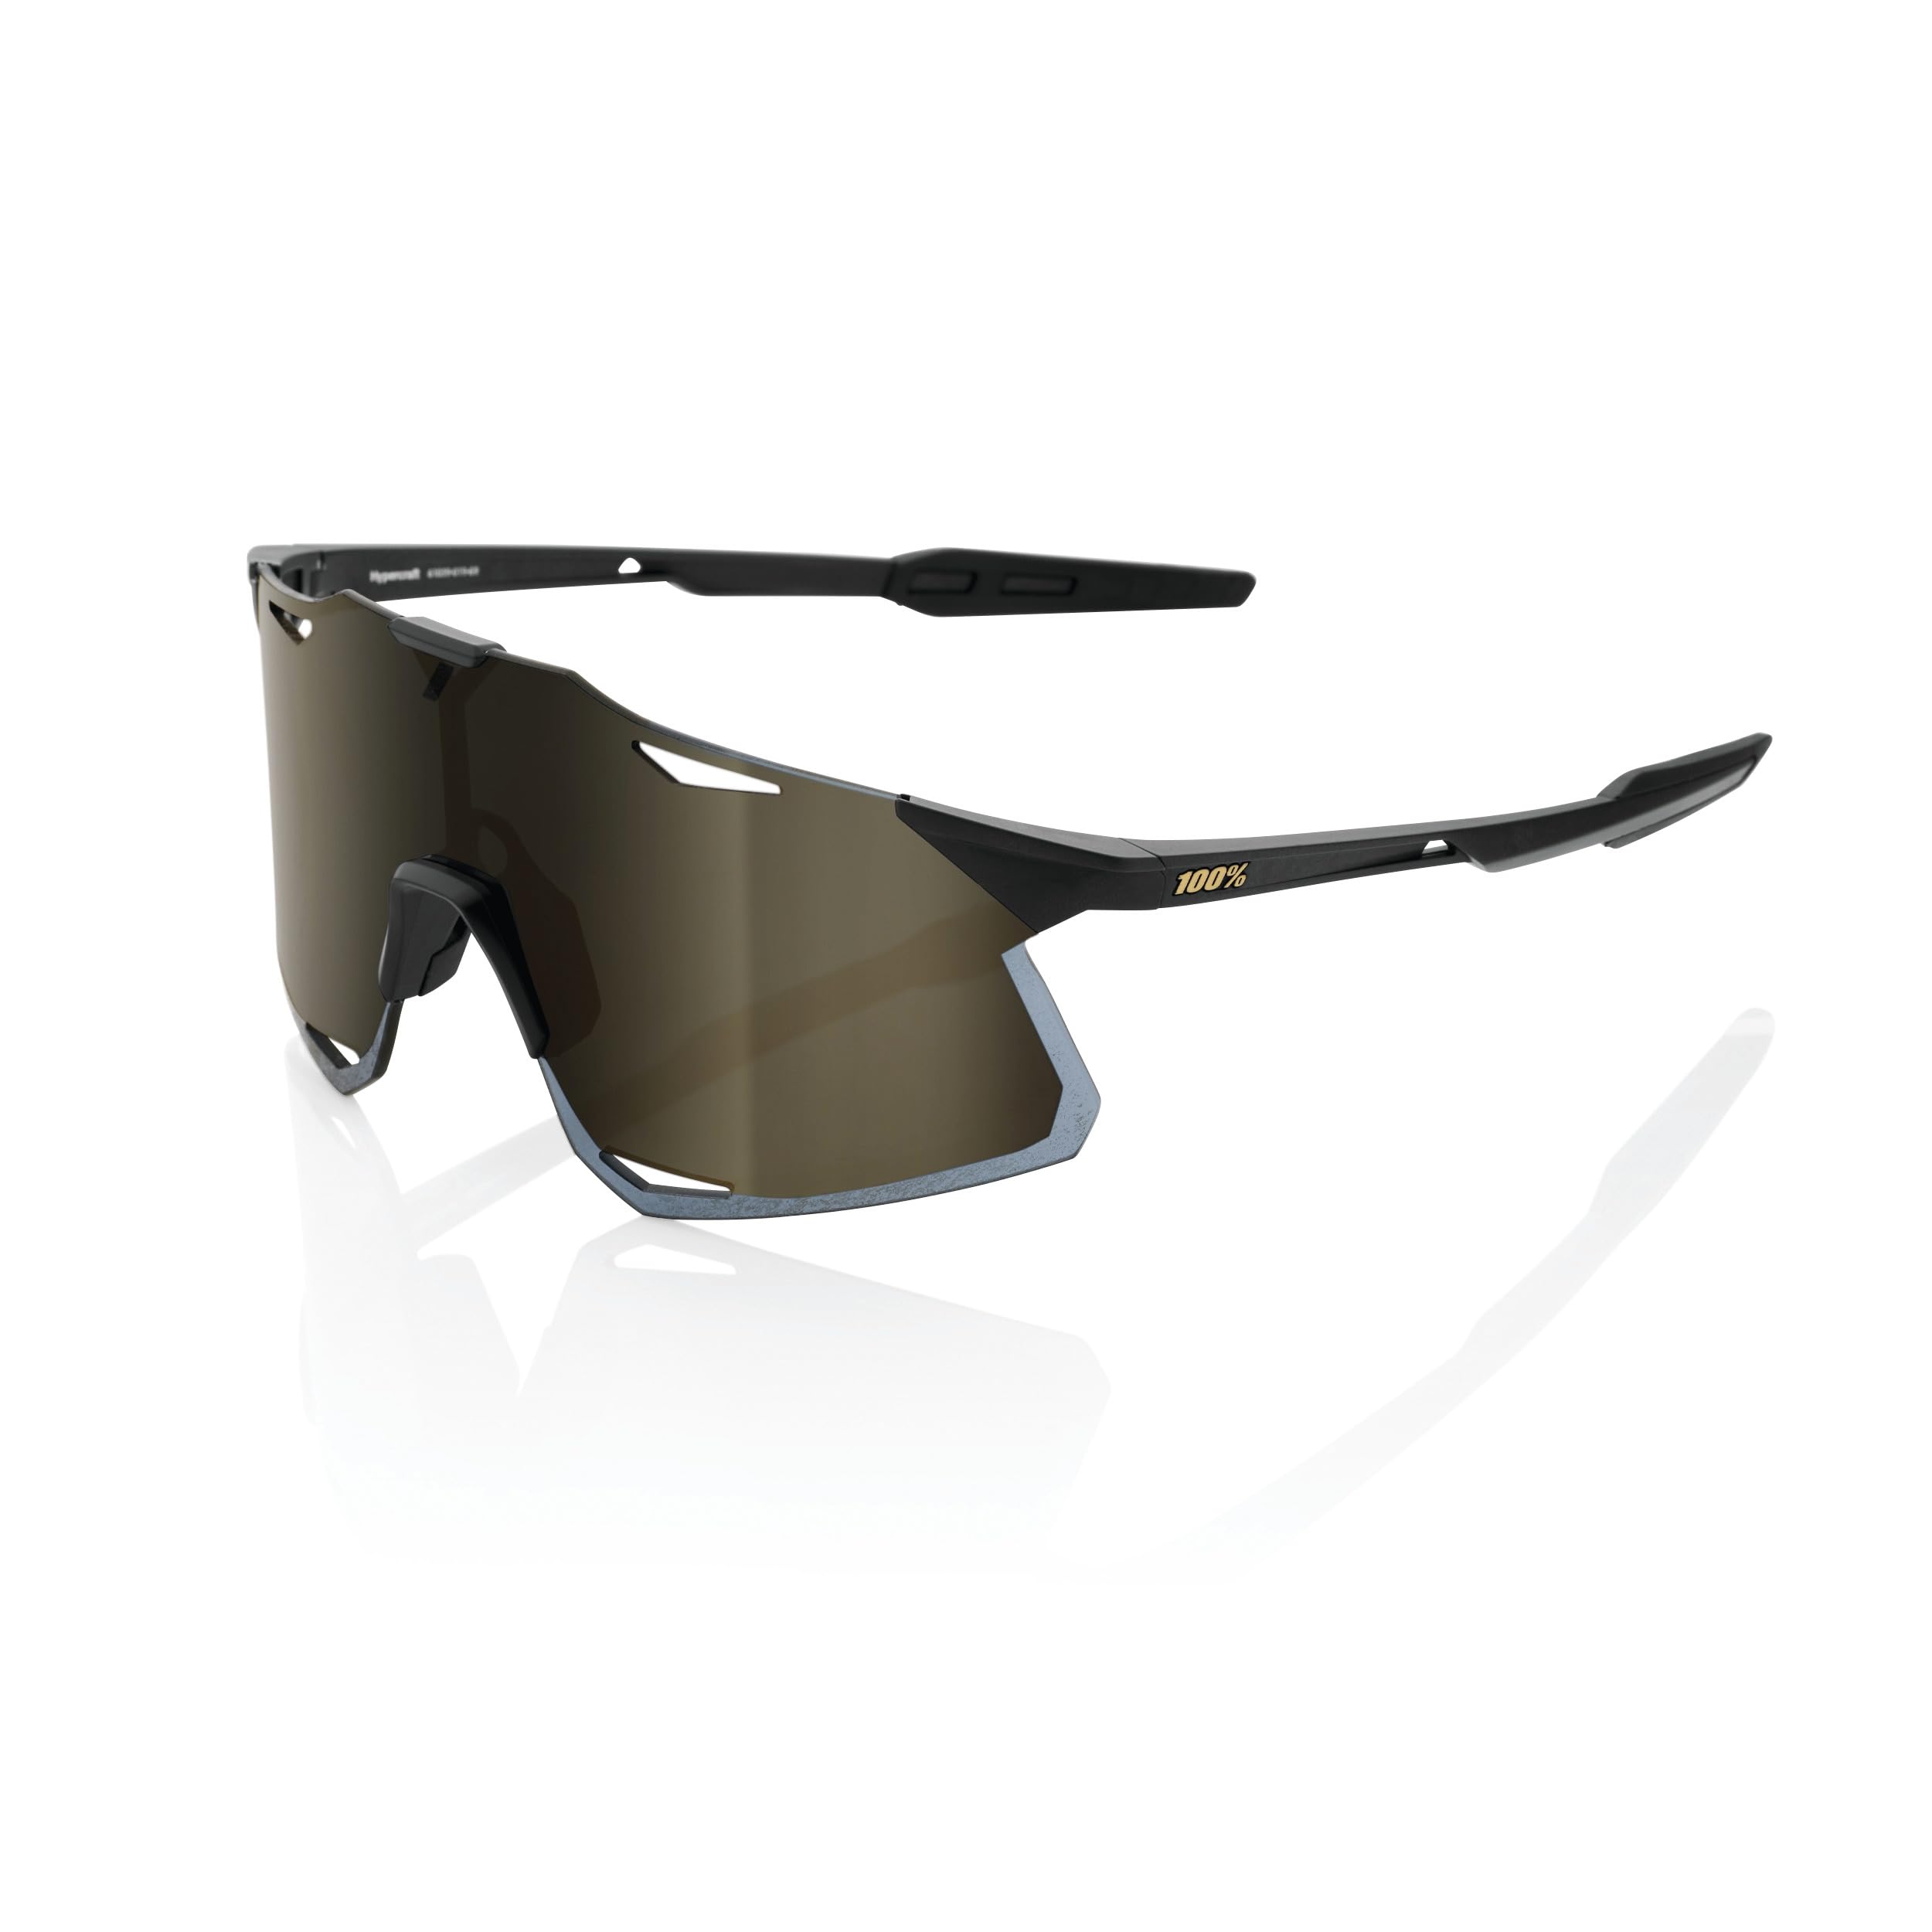 100% HYPERCRAFT Sport Performance Sunglasses, Matte Black, Soft Gold